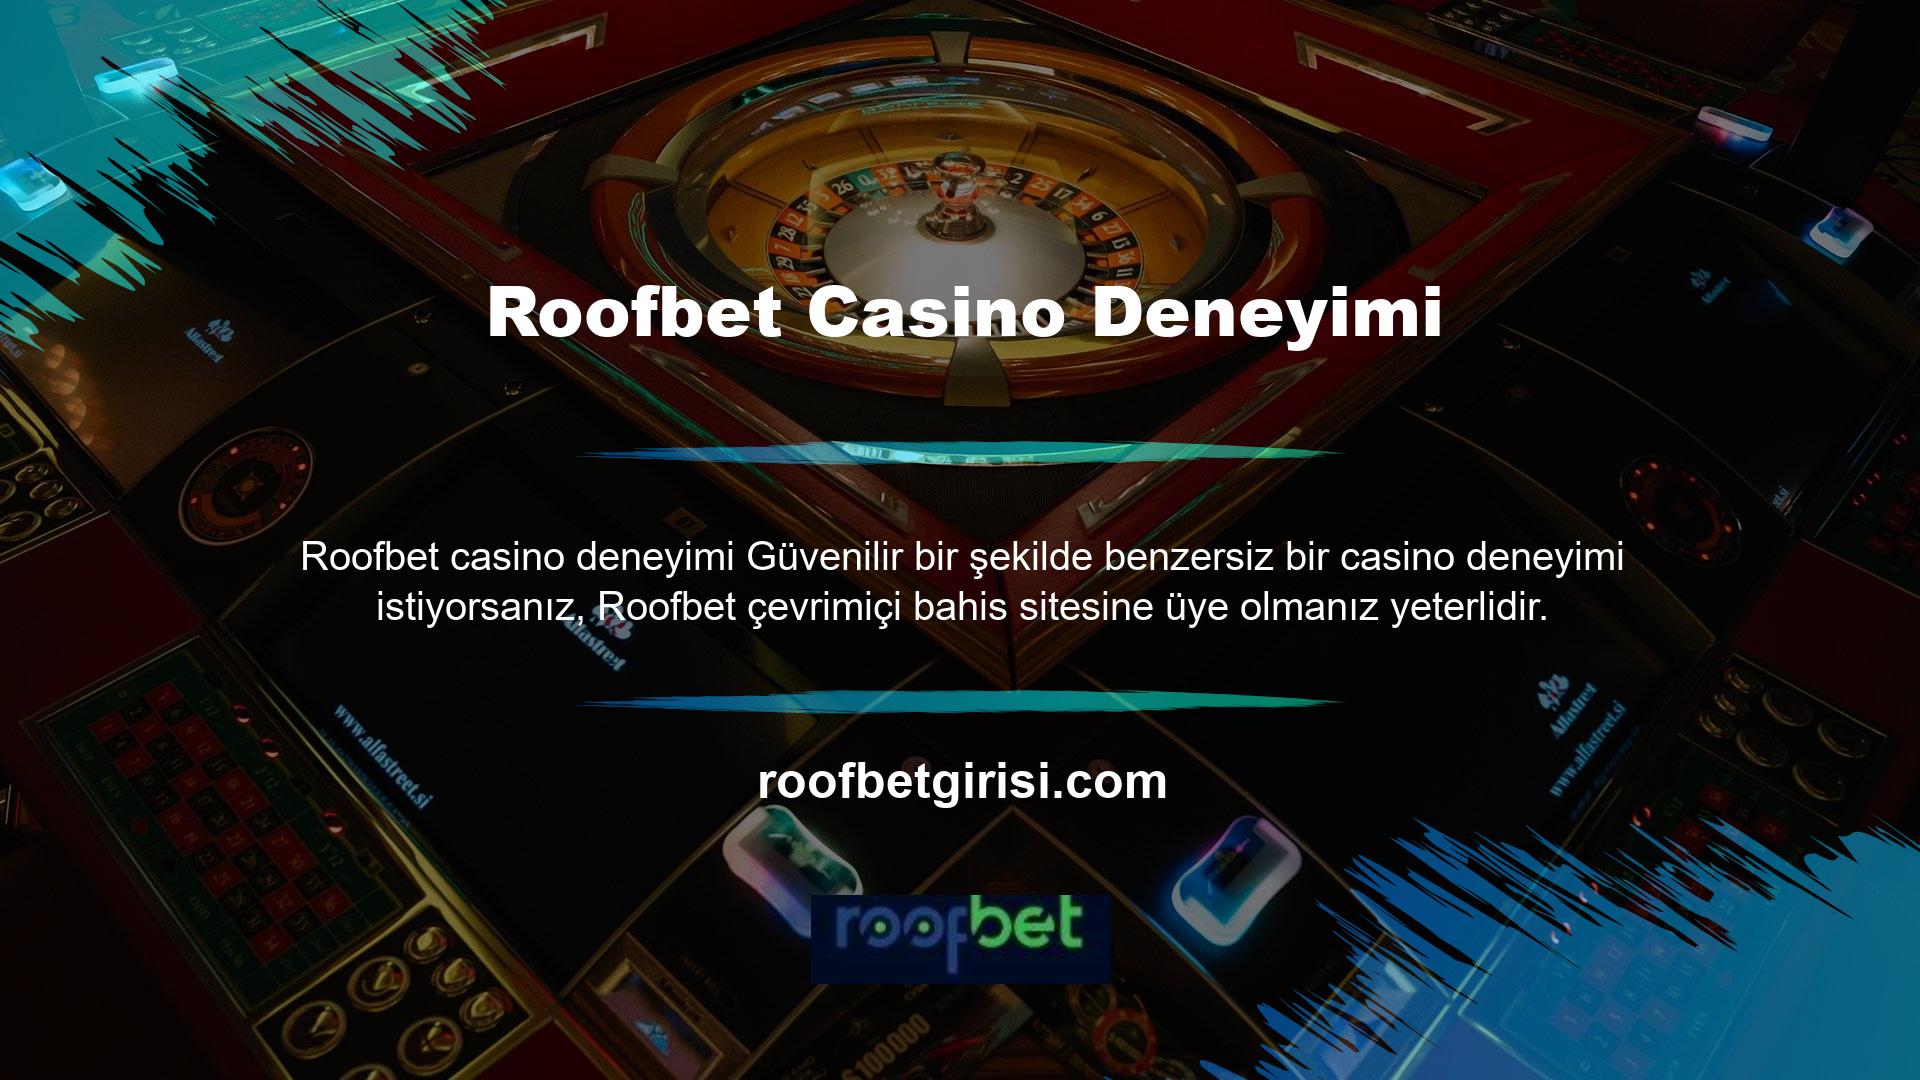 Hesabınızla siteye giriş yaptığınızda daha önce hiç yaşamadığınız casino hizmetleri ile karşılaşacaksınız